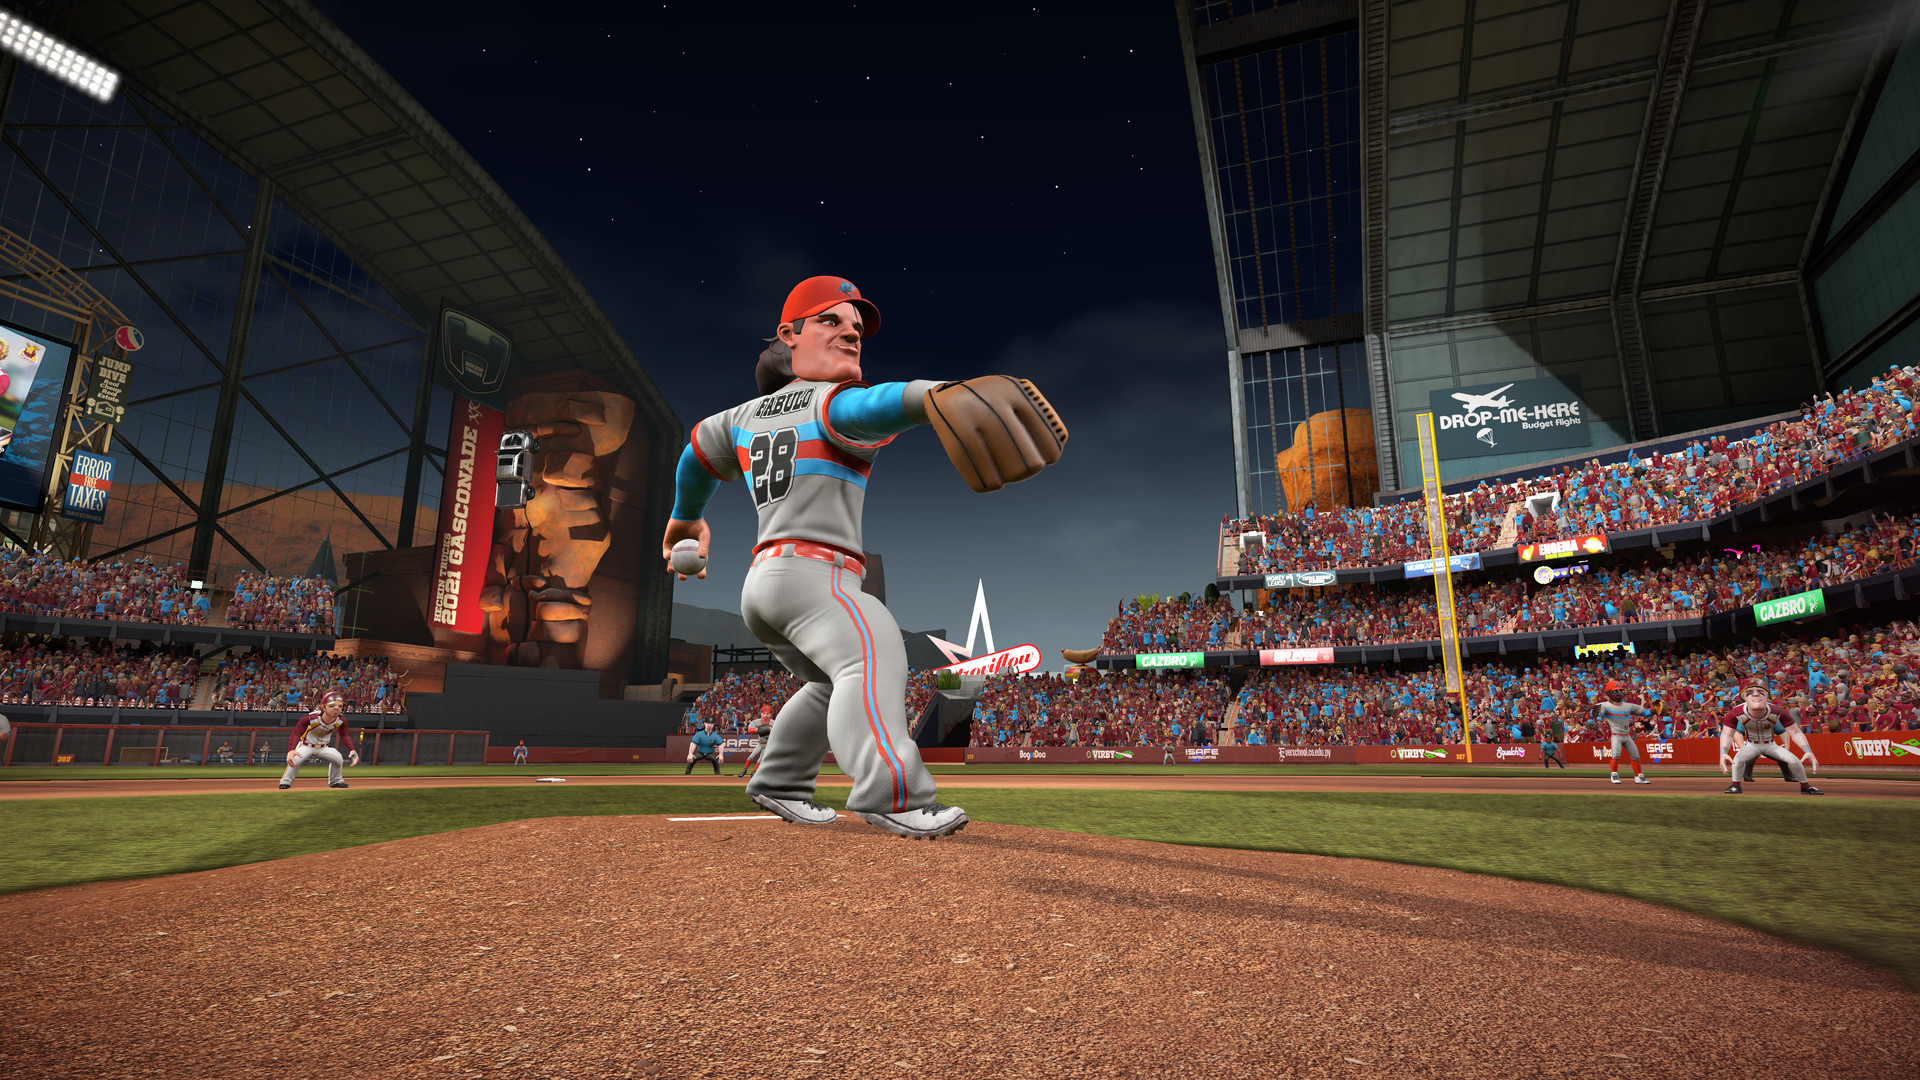 Super Mega Baseball 3 on Steam